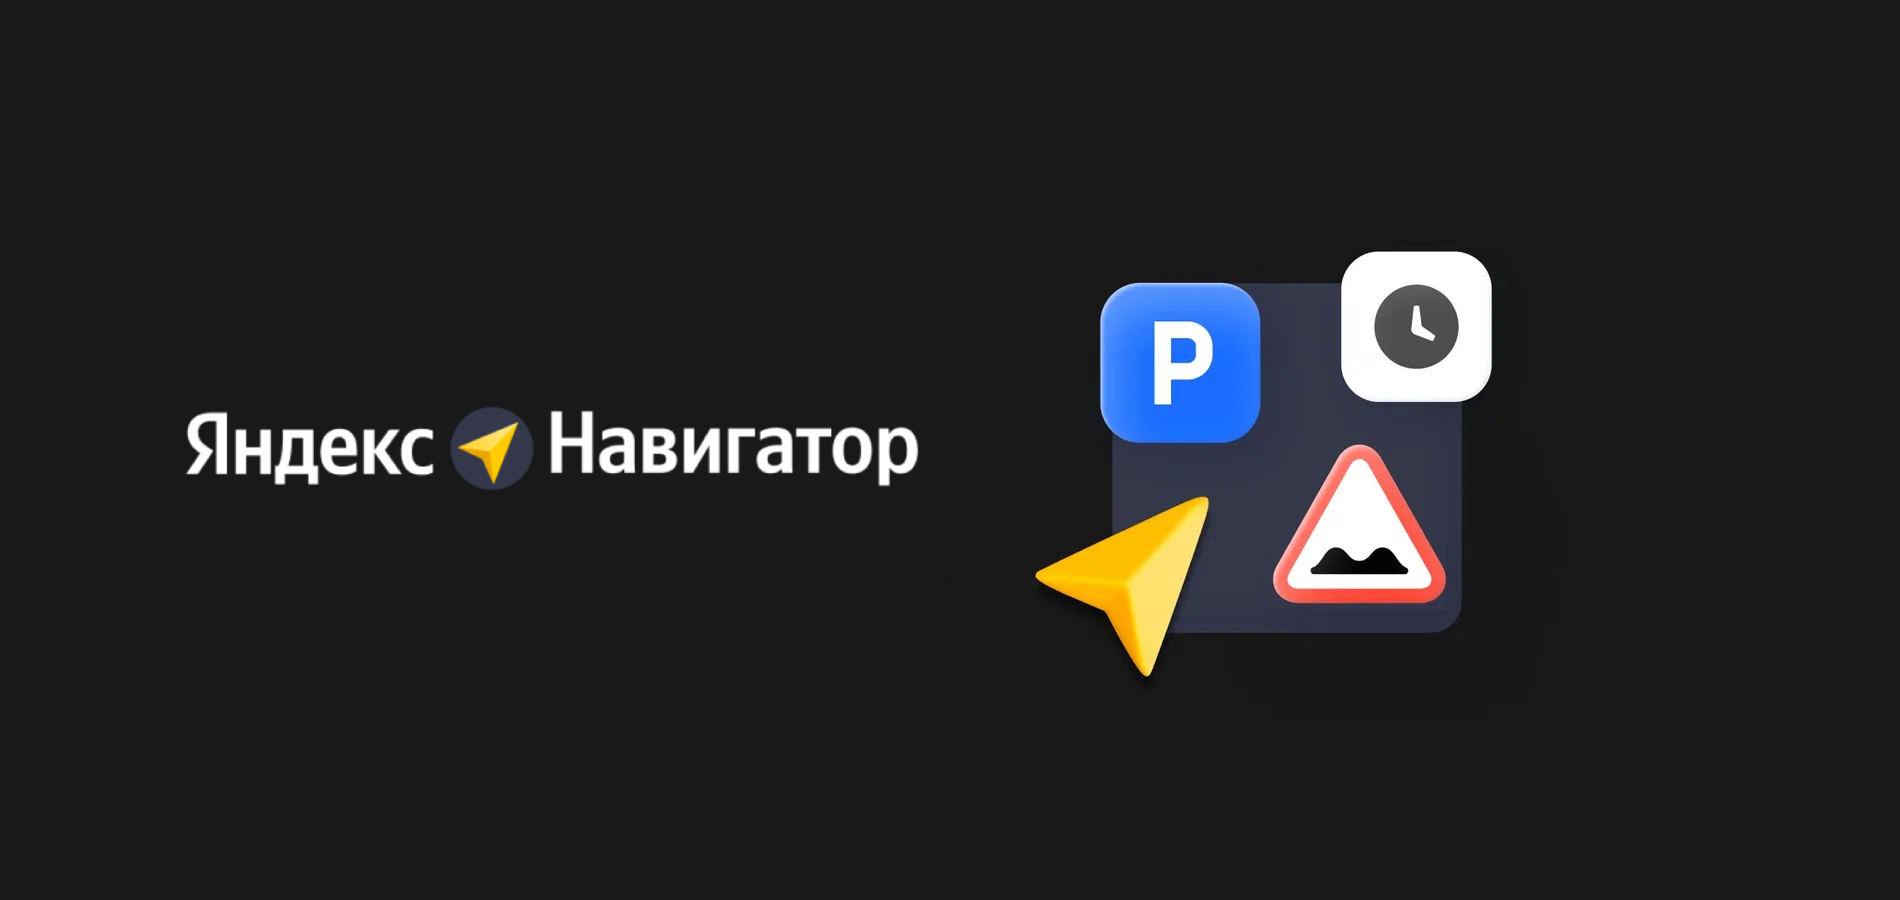 В Яндекс Навигаторе появилась оптимизация маршрута с несколькими точками